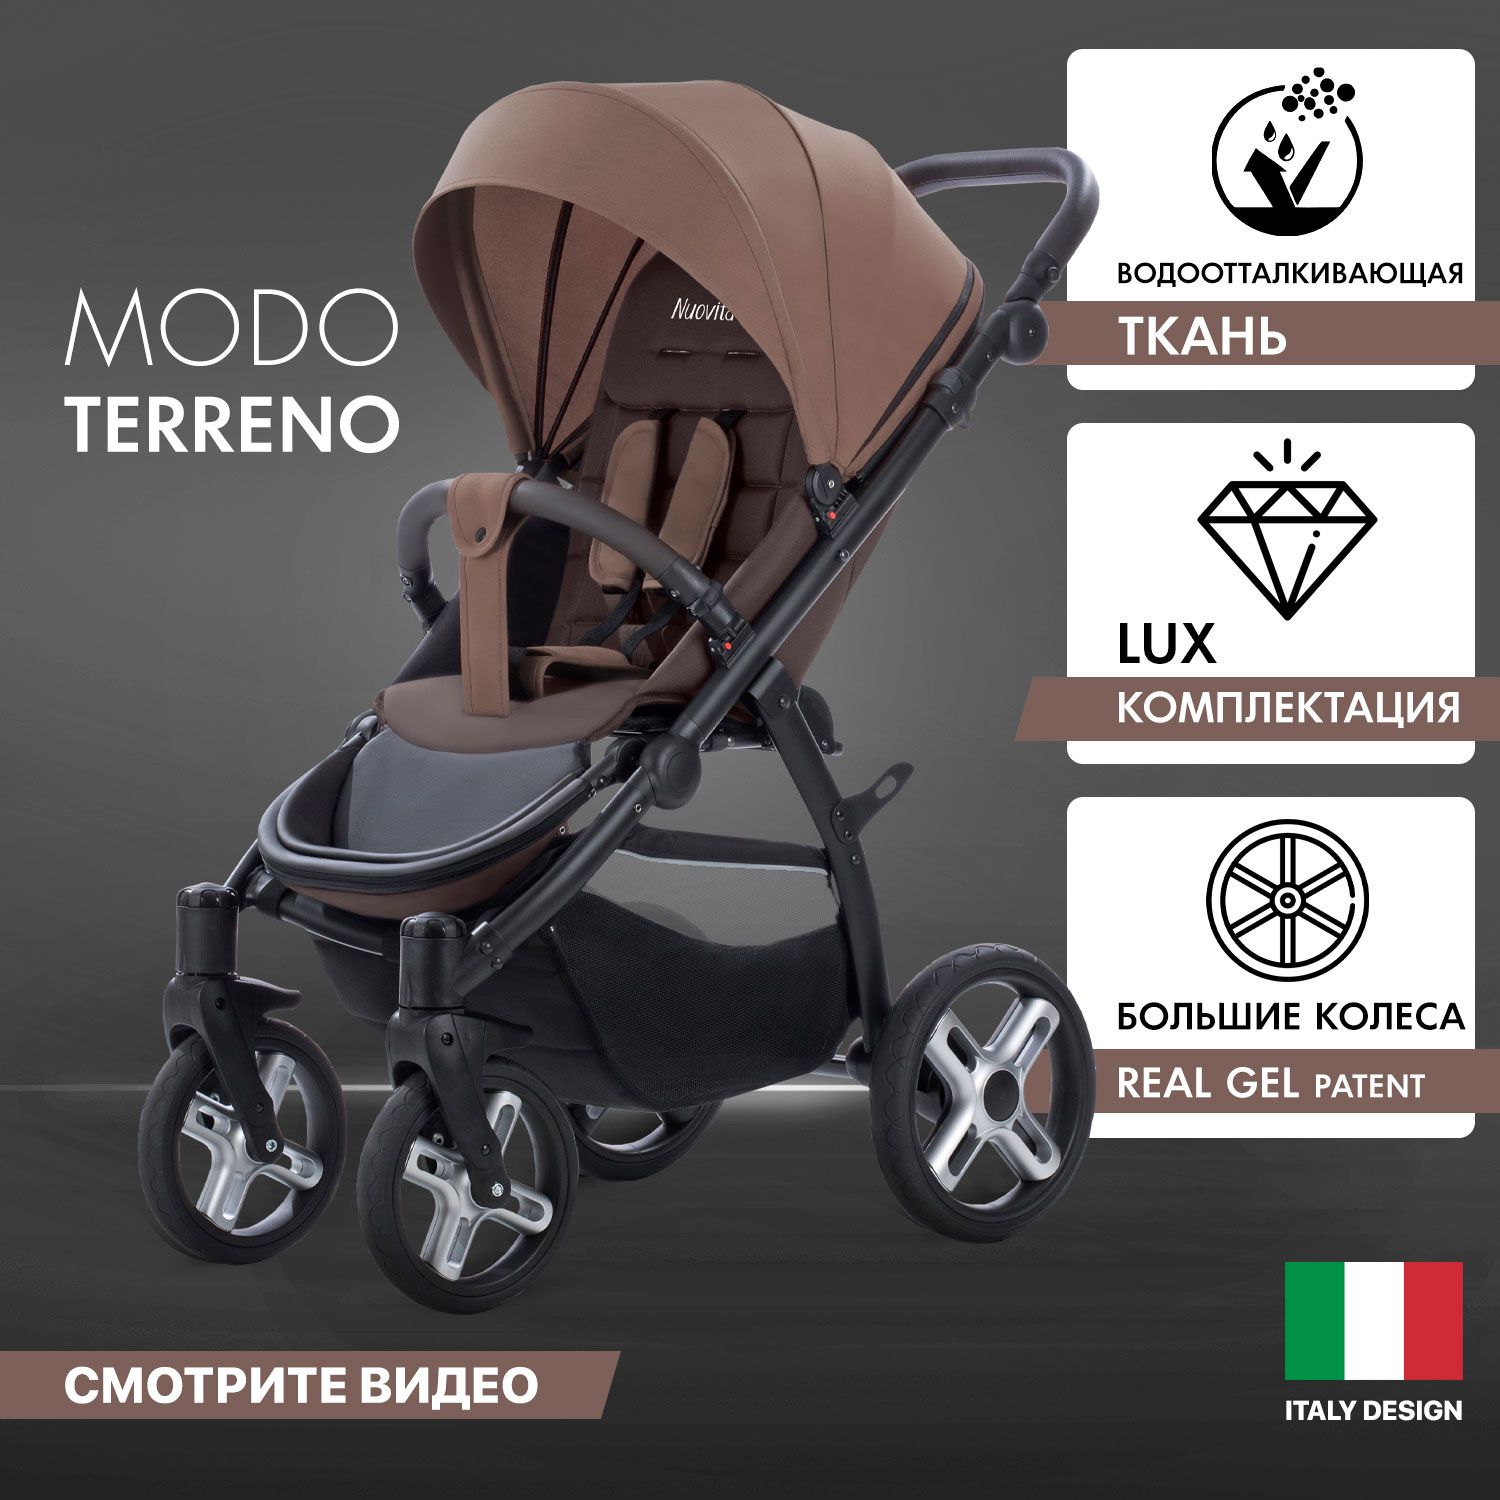 

Прогулочная коляска Nuovita Modo Terreno Marrone scuro/Темно-коричневый, Modo Terreno